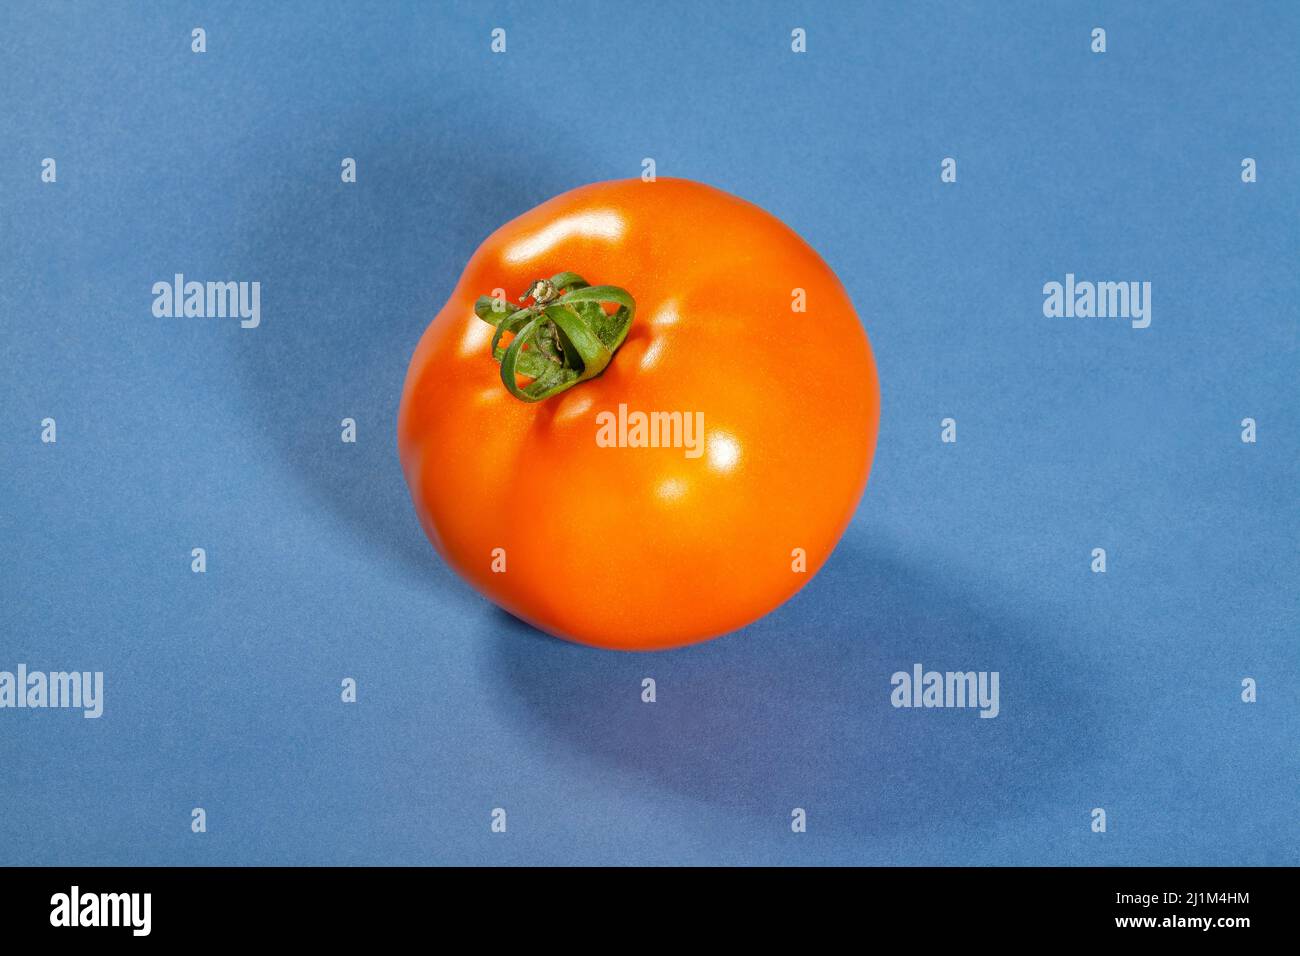 Tomate orange sur fond bleu Banque D'Images